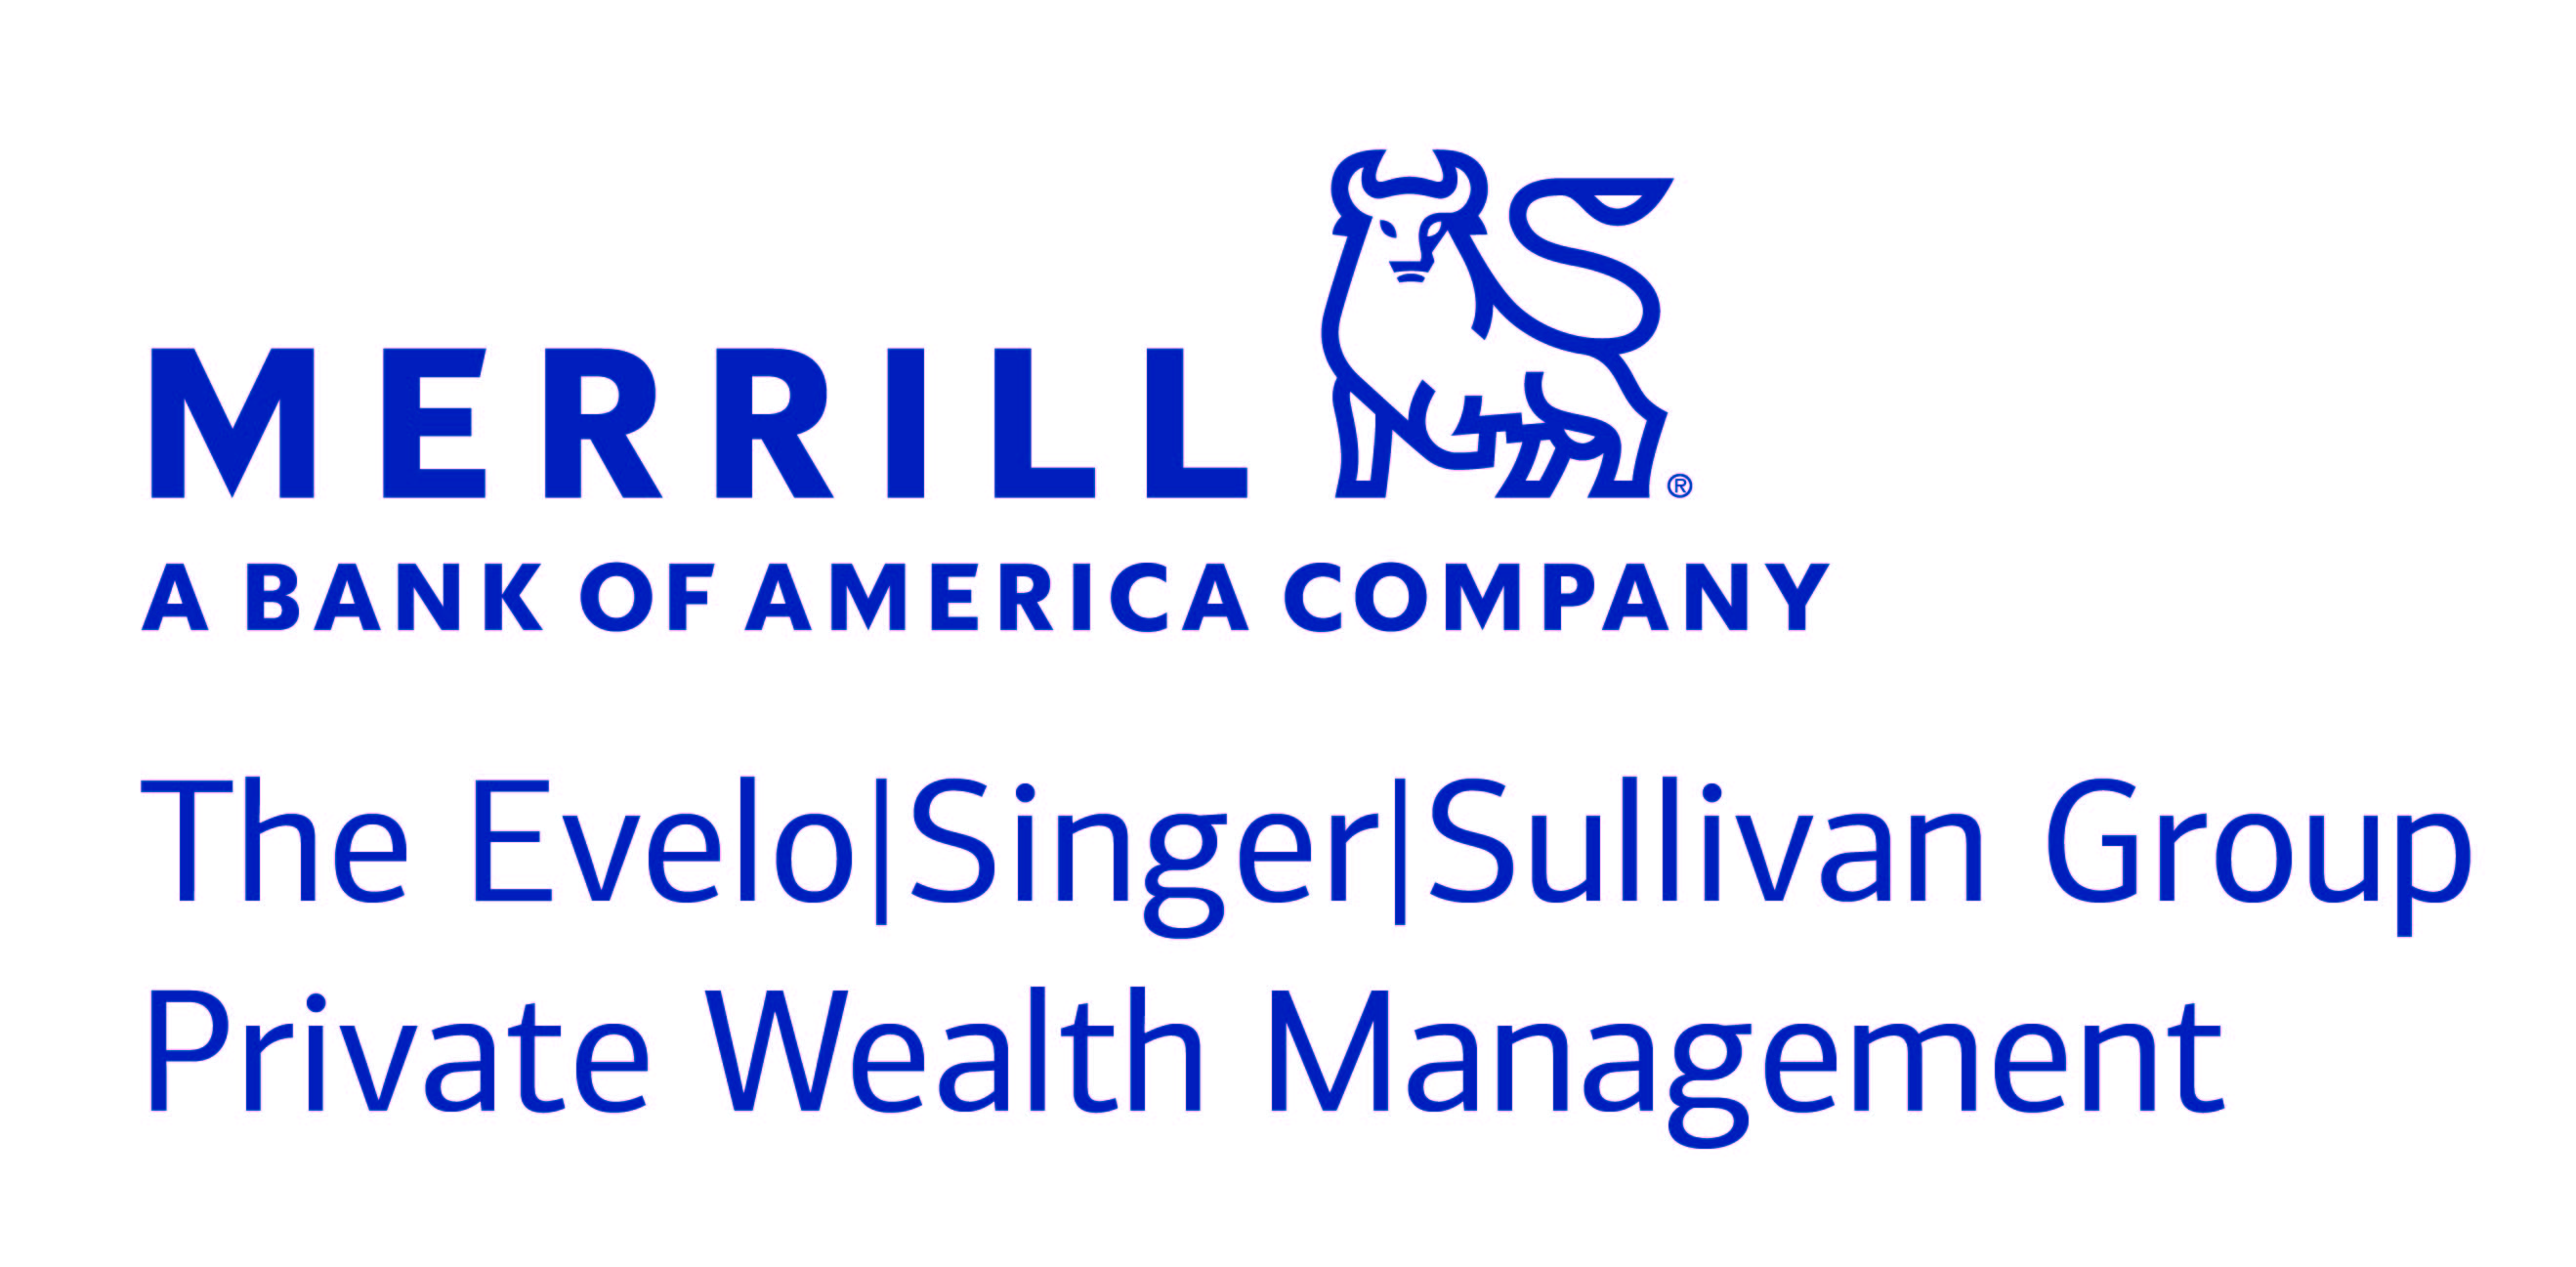 Merrill The Evelo|Singer|Sullivan Group 